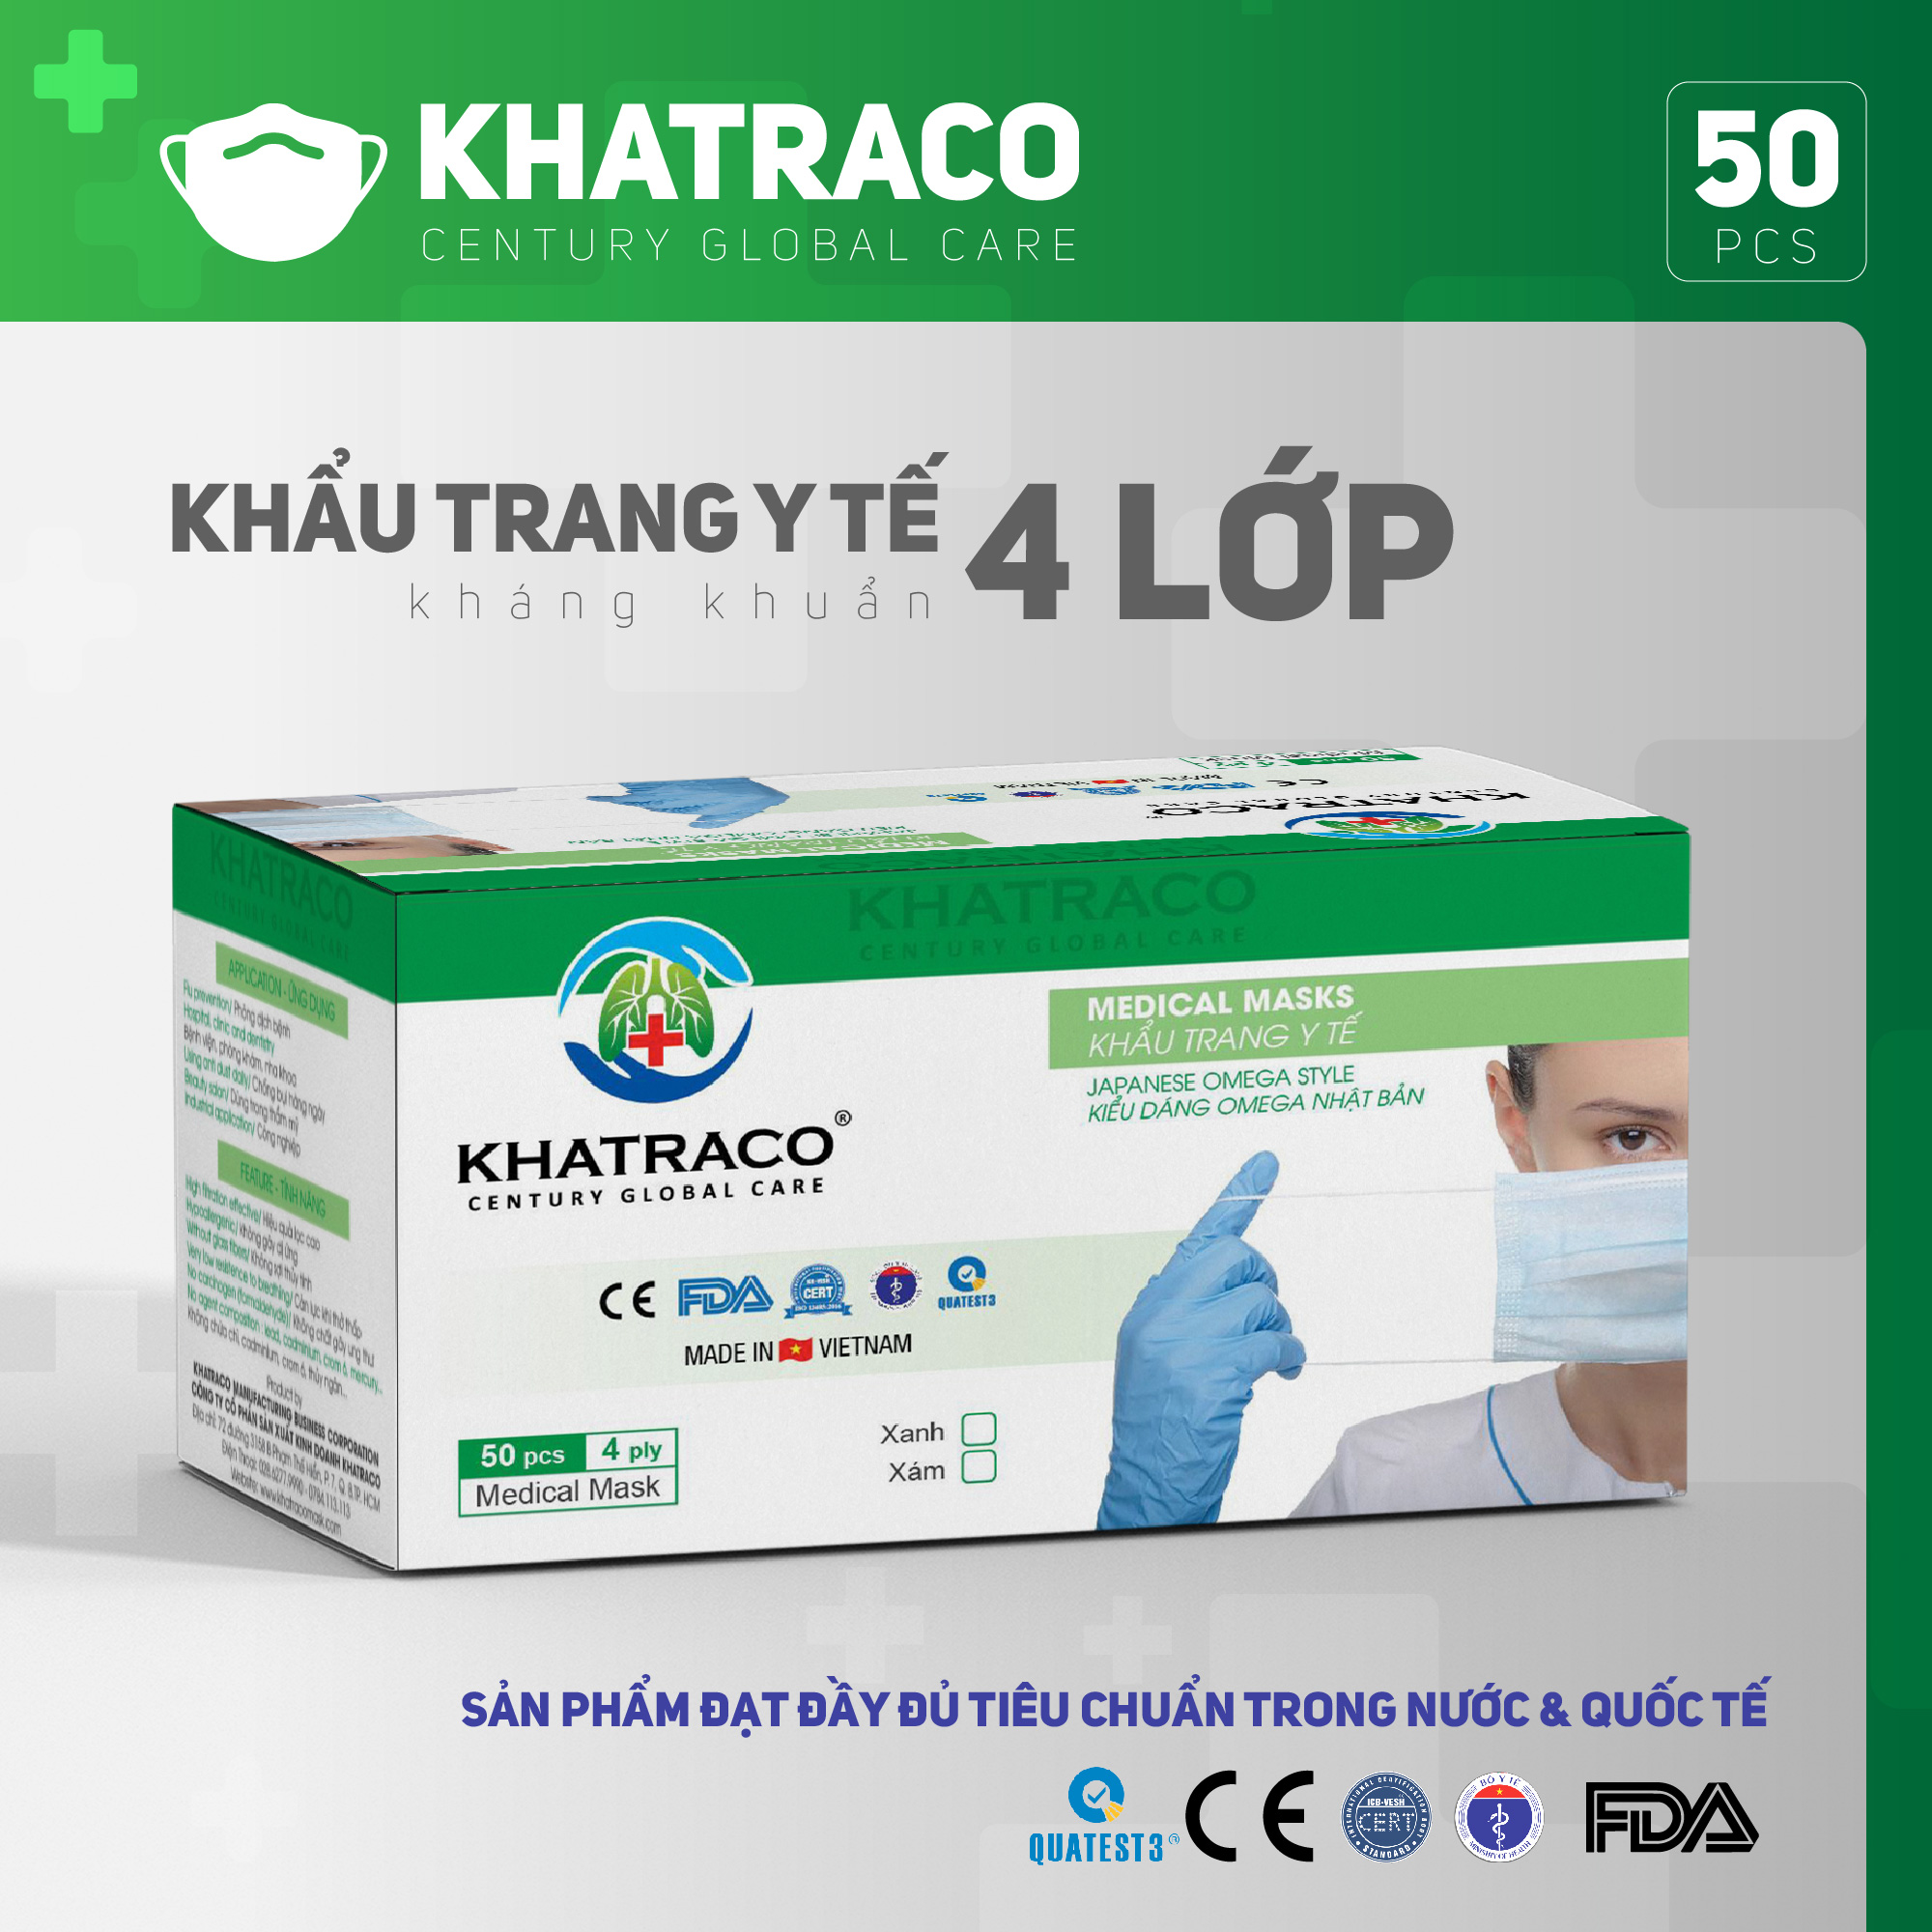 Khẩu trang y tế kháng khuẩn 4 lớp Khatraco Medimask hộp 50 chiếc đạt tiêu chuẩn FDA,CE quốc tếkhẩu trang kháng khuẩn 4 lớp dành cho người lớn,khẩu trang 4 lớp mềm mại có vải kháng khuẩn ngăn ngừa bụi bẩn,vi khuẩn sử dụng 1 lần